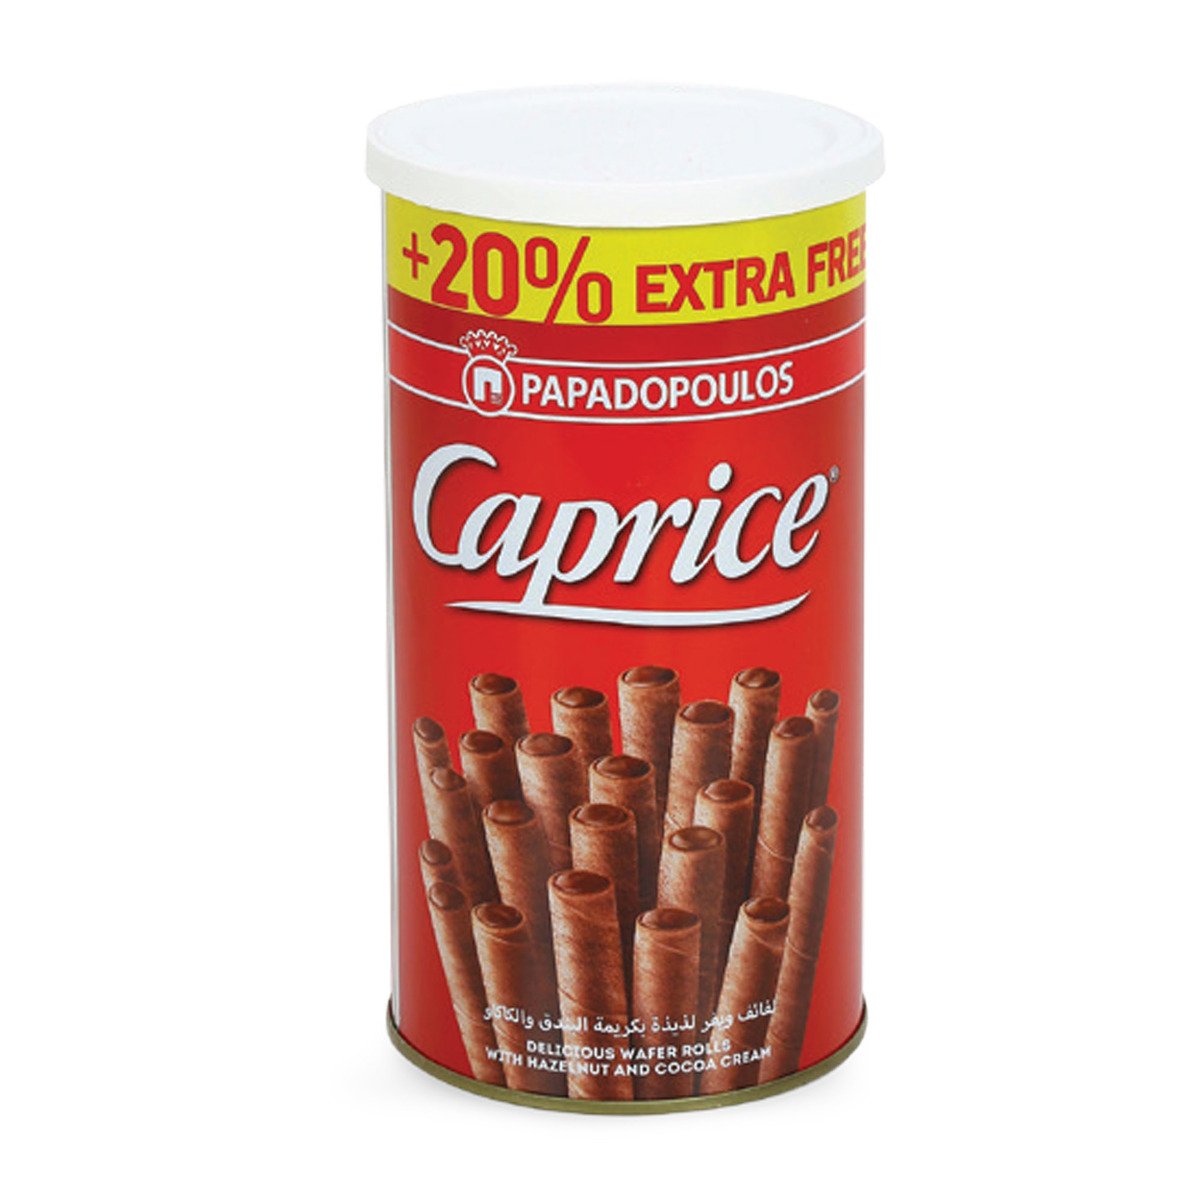 Papadopoulos Caprice 250 g + 20% Extra